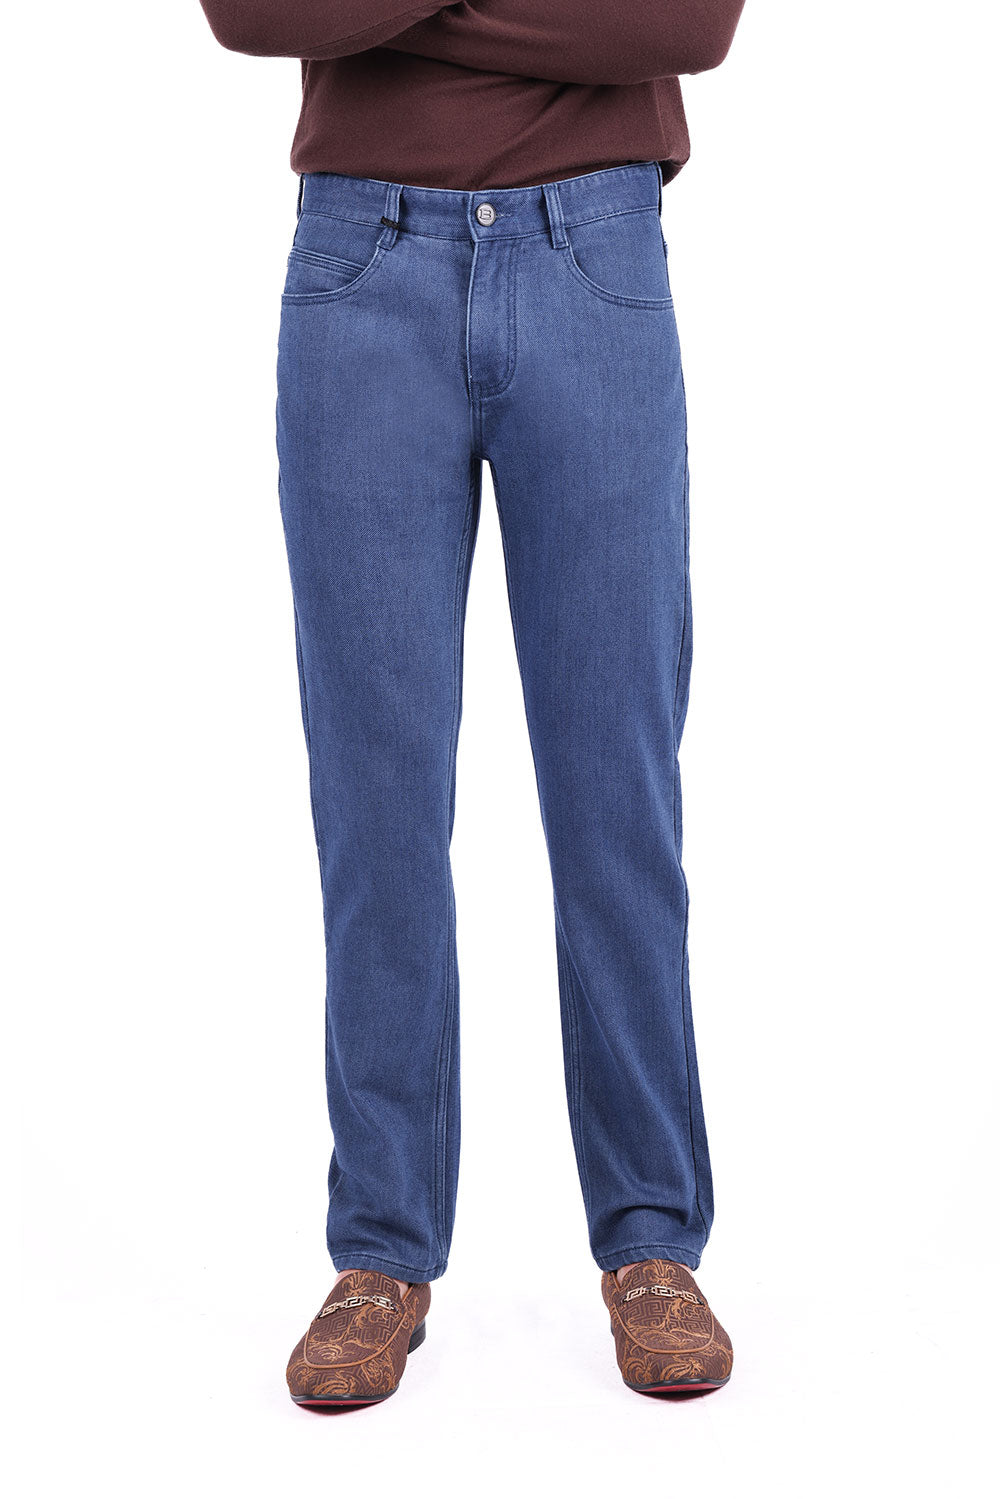 Barabas Men's Solid Color Premium Stretch Denim Jeans 3SN100 Medium Blue